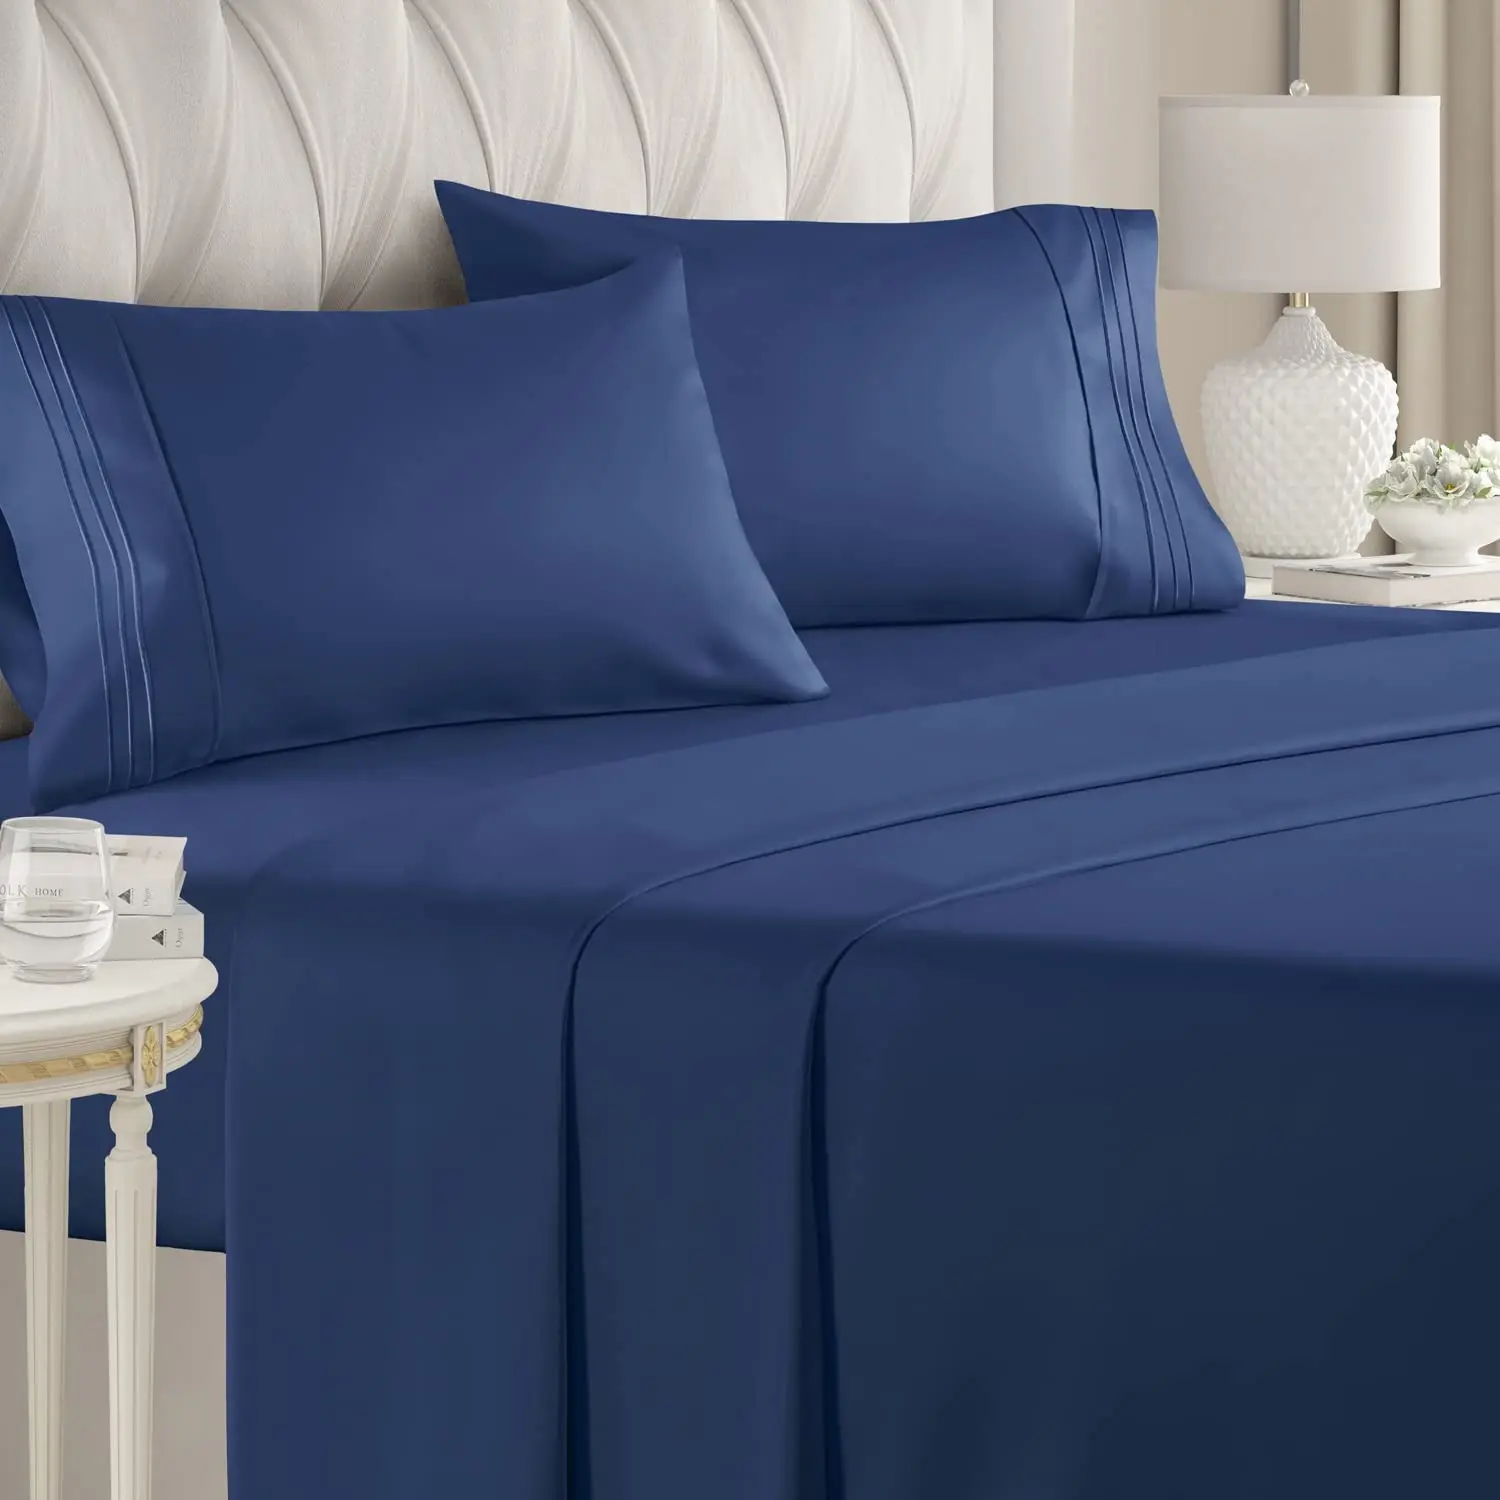 Ropa de cama de masaje para el hogar, juego de sábanas de algodón orgánico 100%, tamaño Queen, de lujo